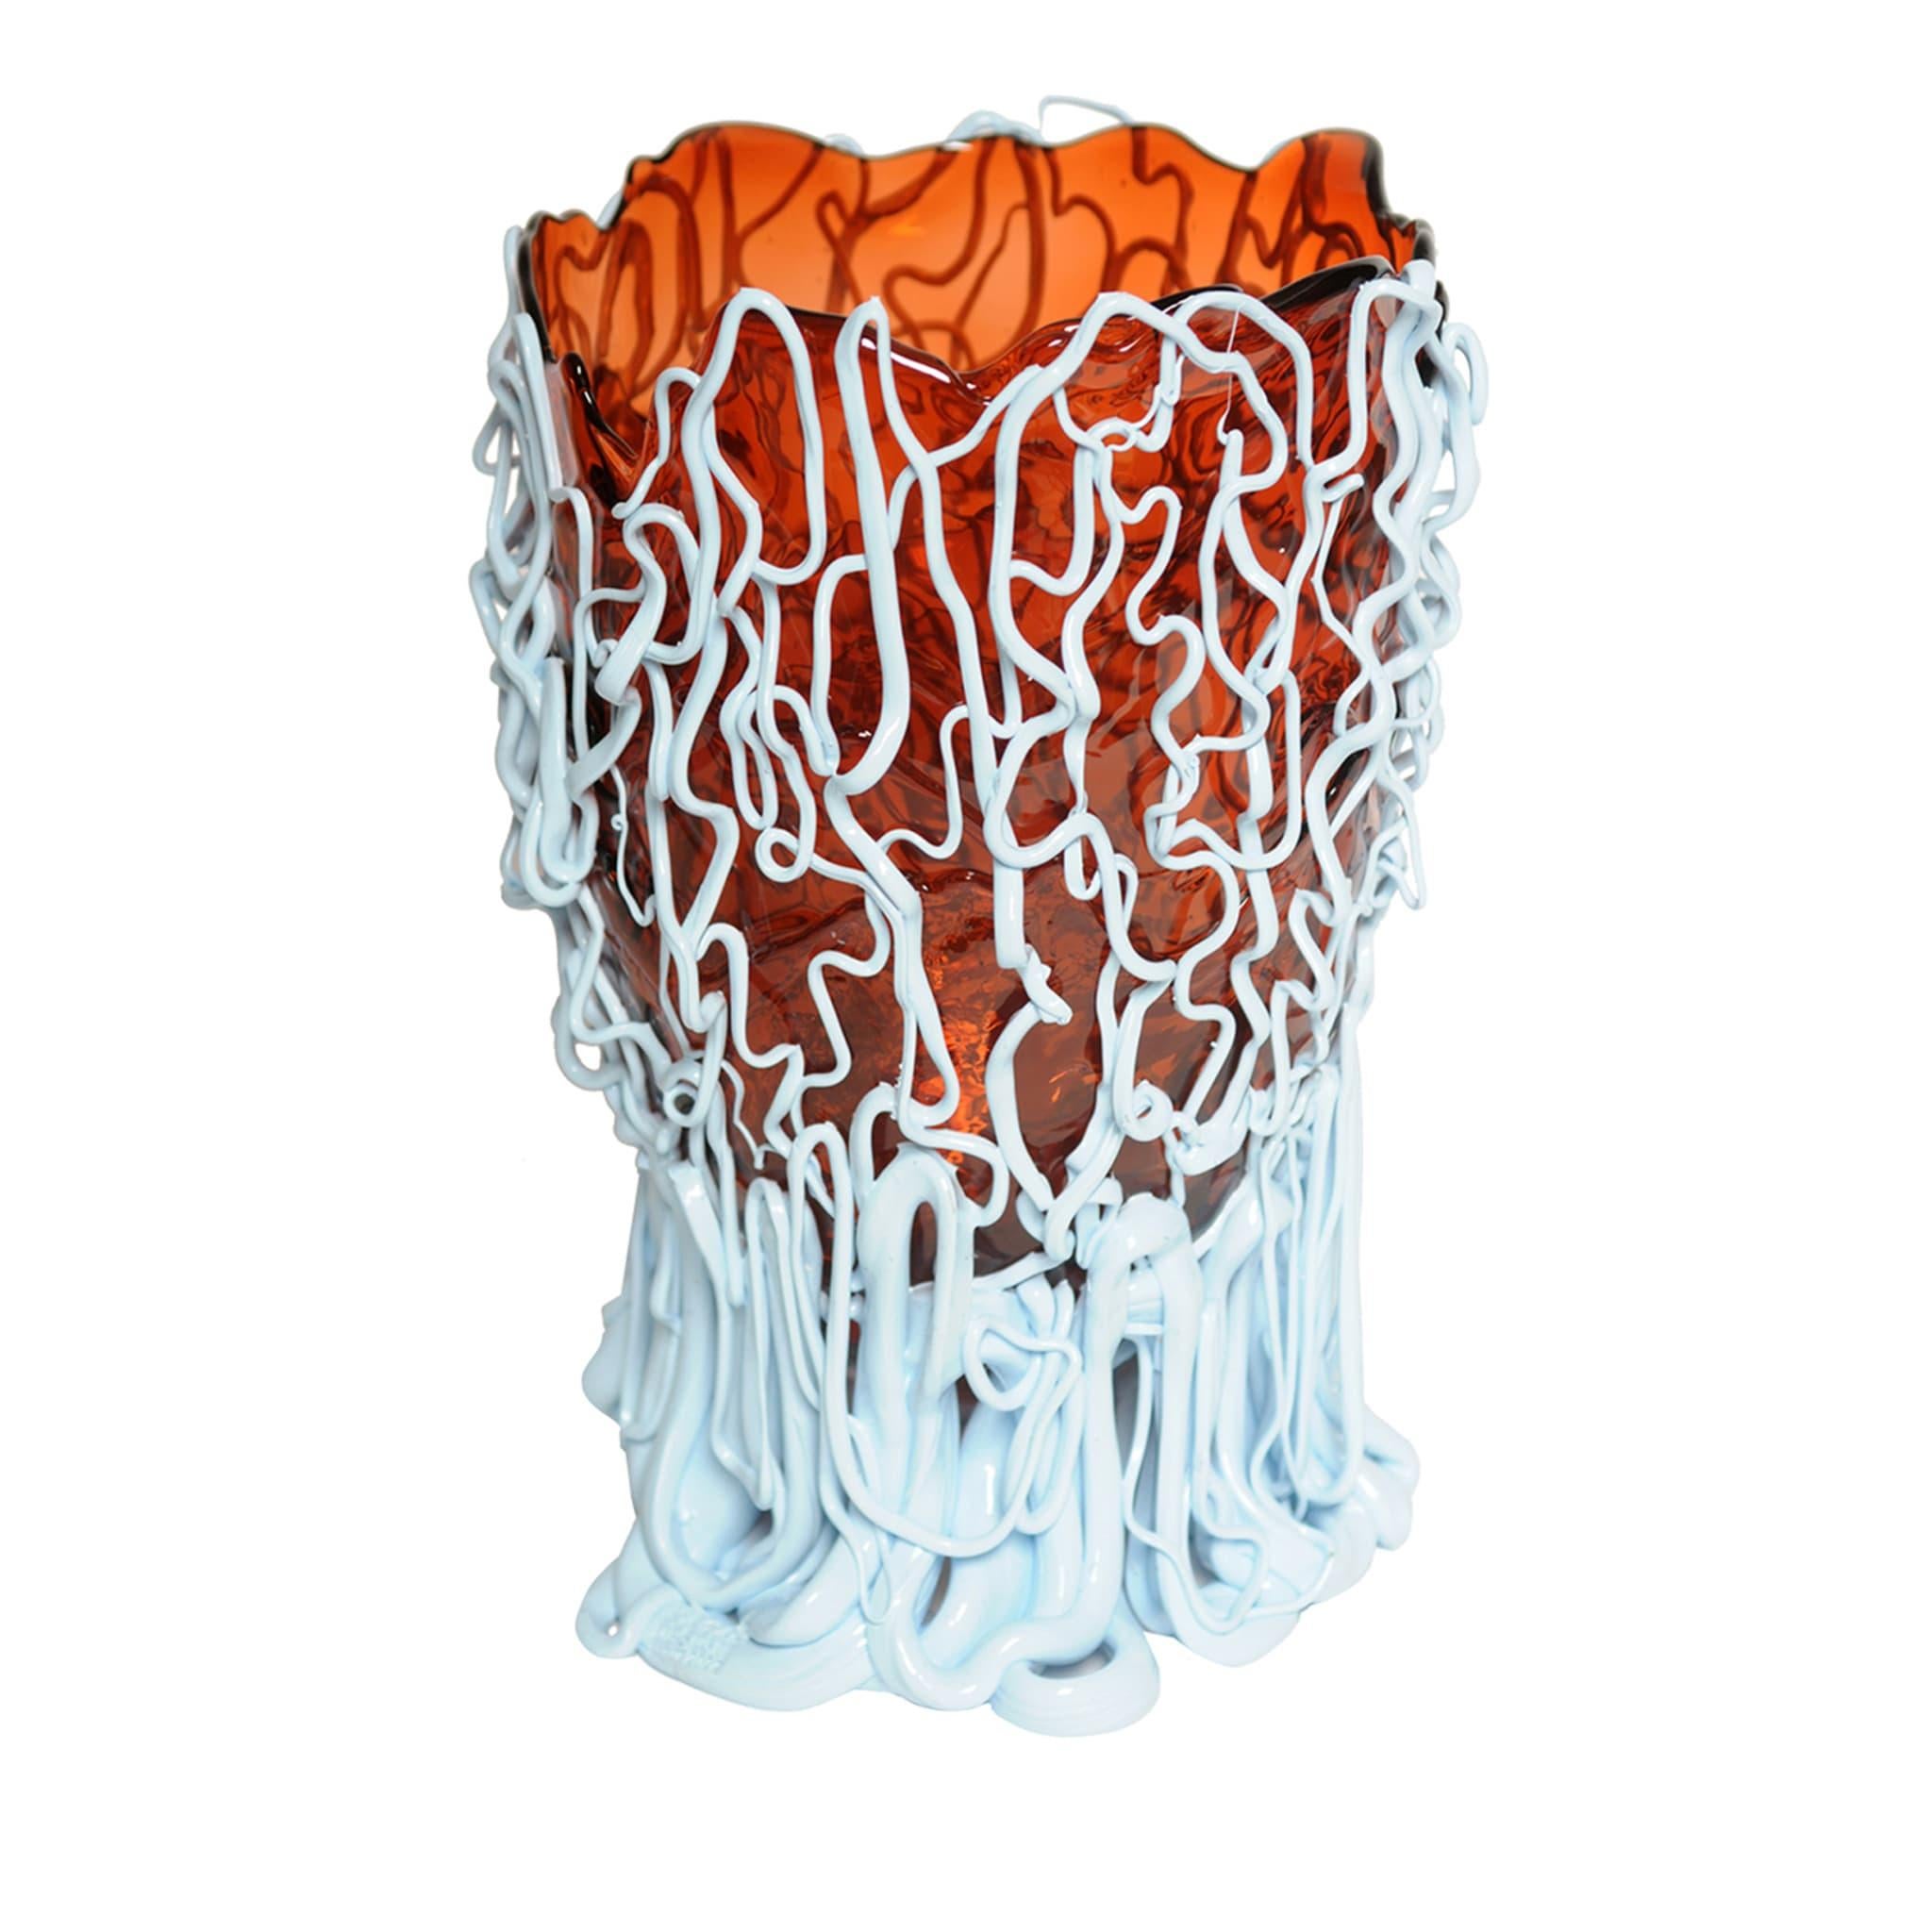 Vase en résine souple conçu par Gaetano Pesce en 1995 pour la collection Fish Design.